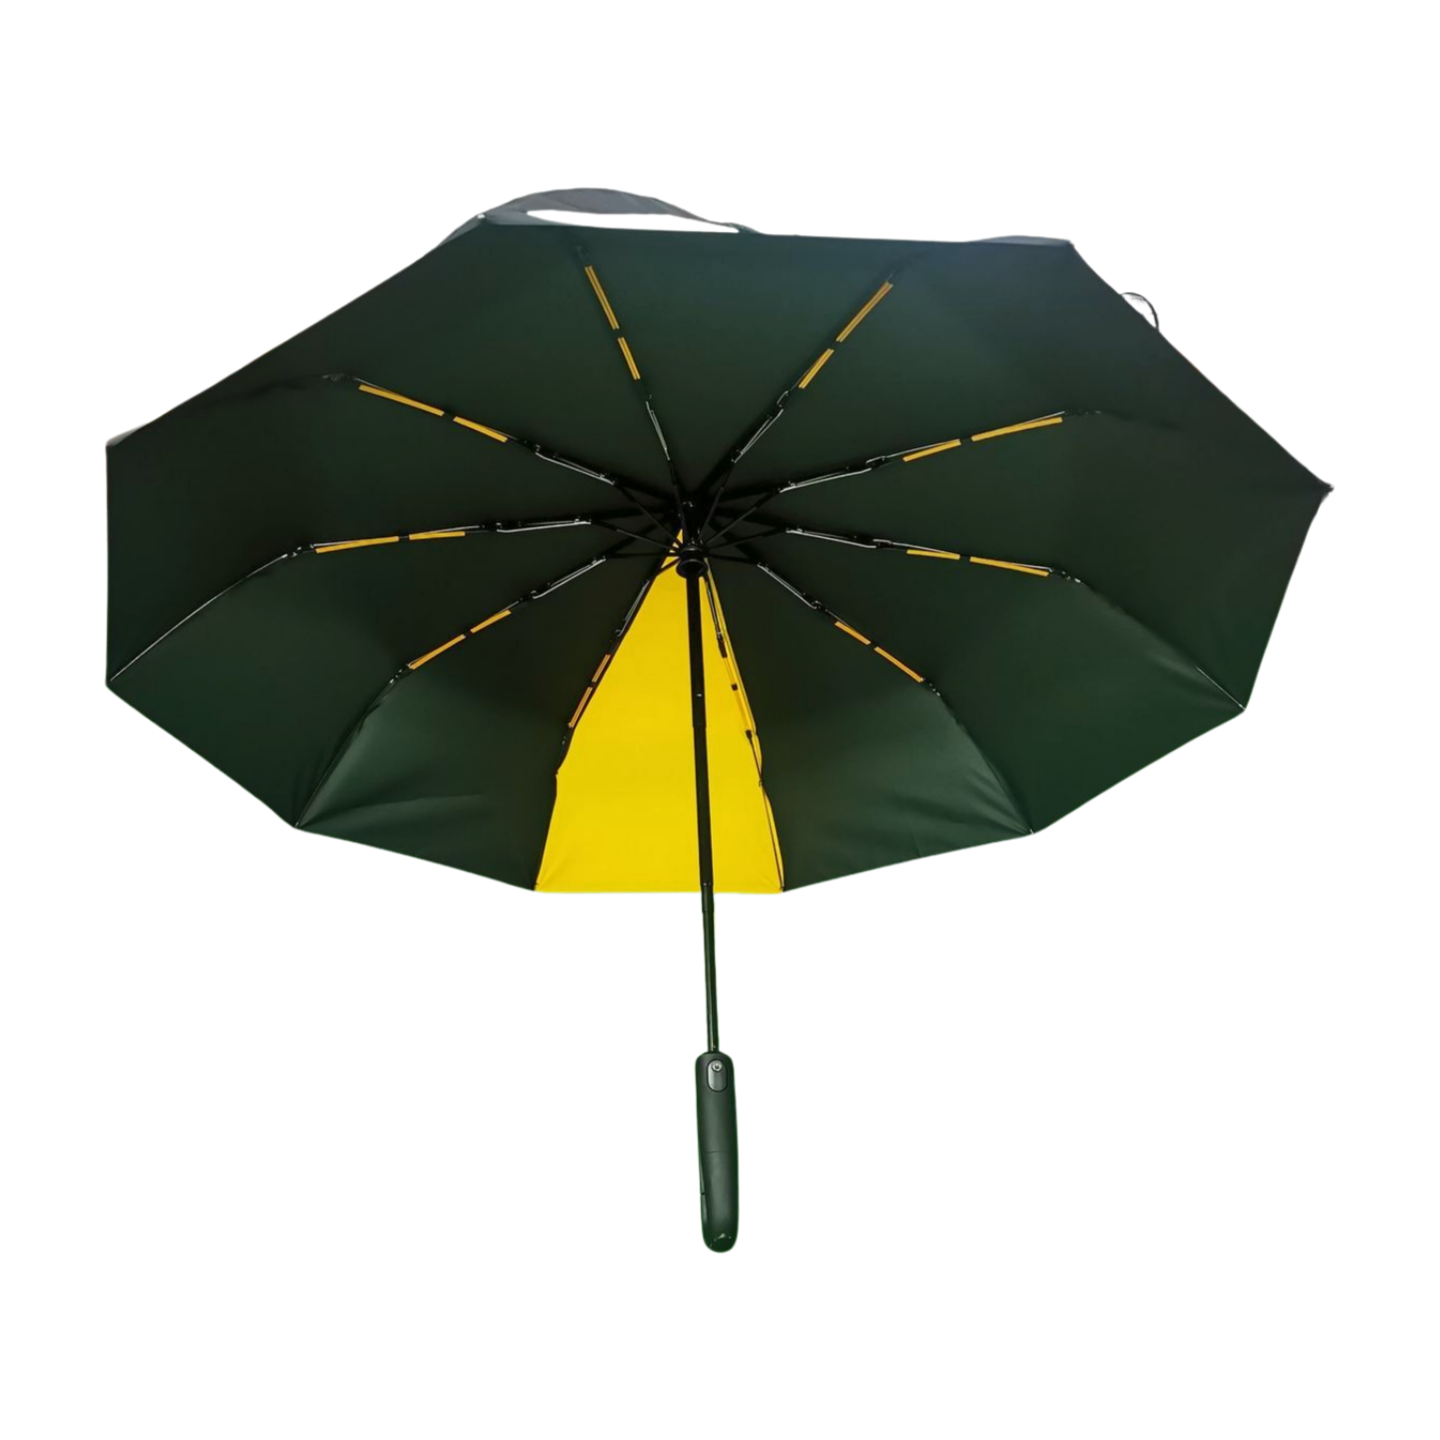 https://www.hodaumbrella.com/upgrade-hook-handle-three-folding-compact-umbrella-product/